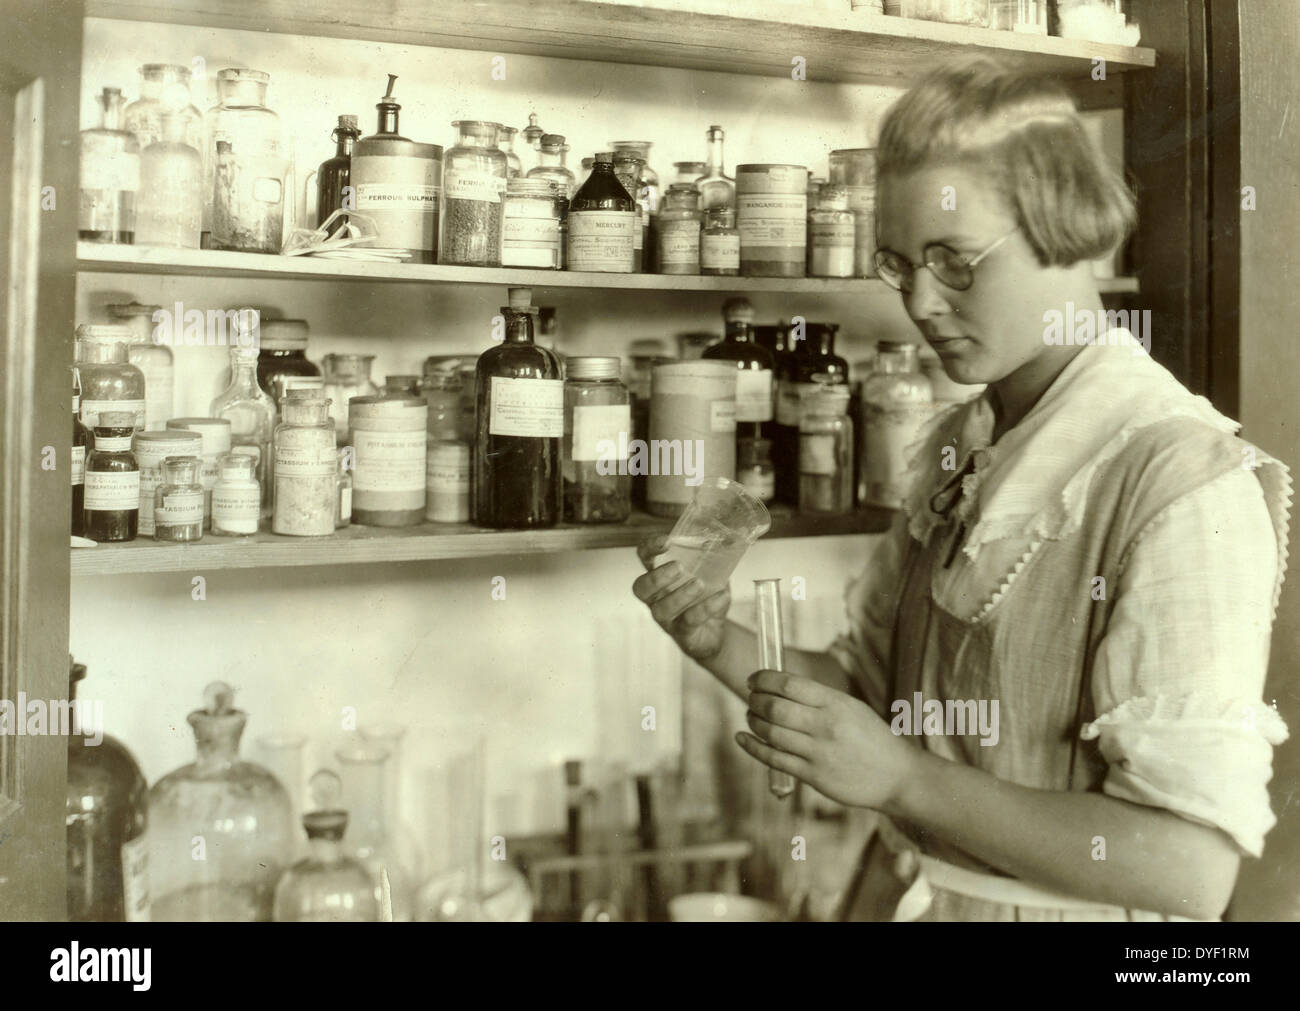 Un terzo anno high school girl nel laboratorio chimico, Greenbank Consolidated School, 1921. Pocahontas County, West Virginia Foto di Lewis Hine W., 1874-1940, fotografo Foto Stock